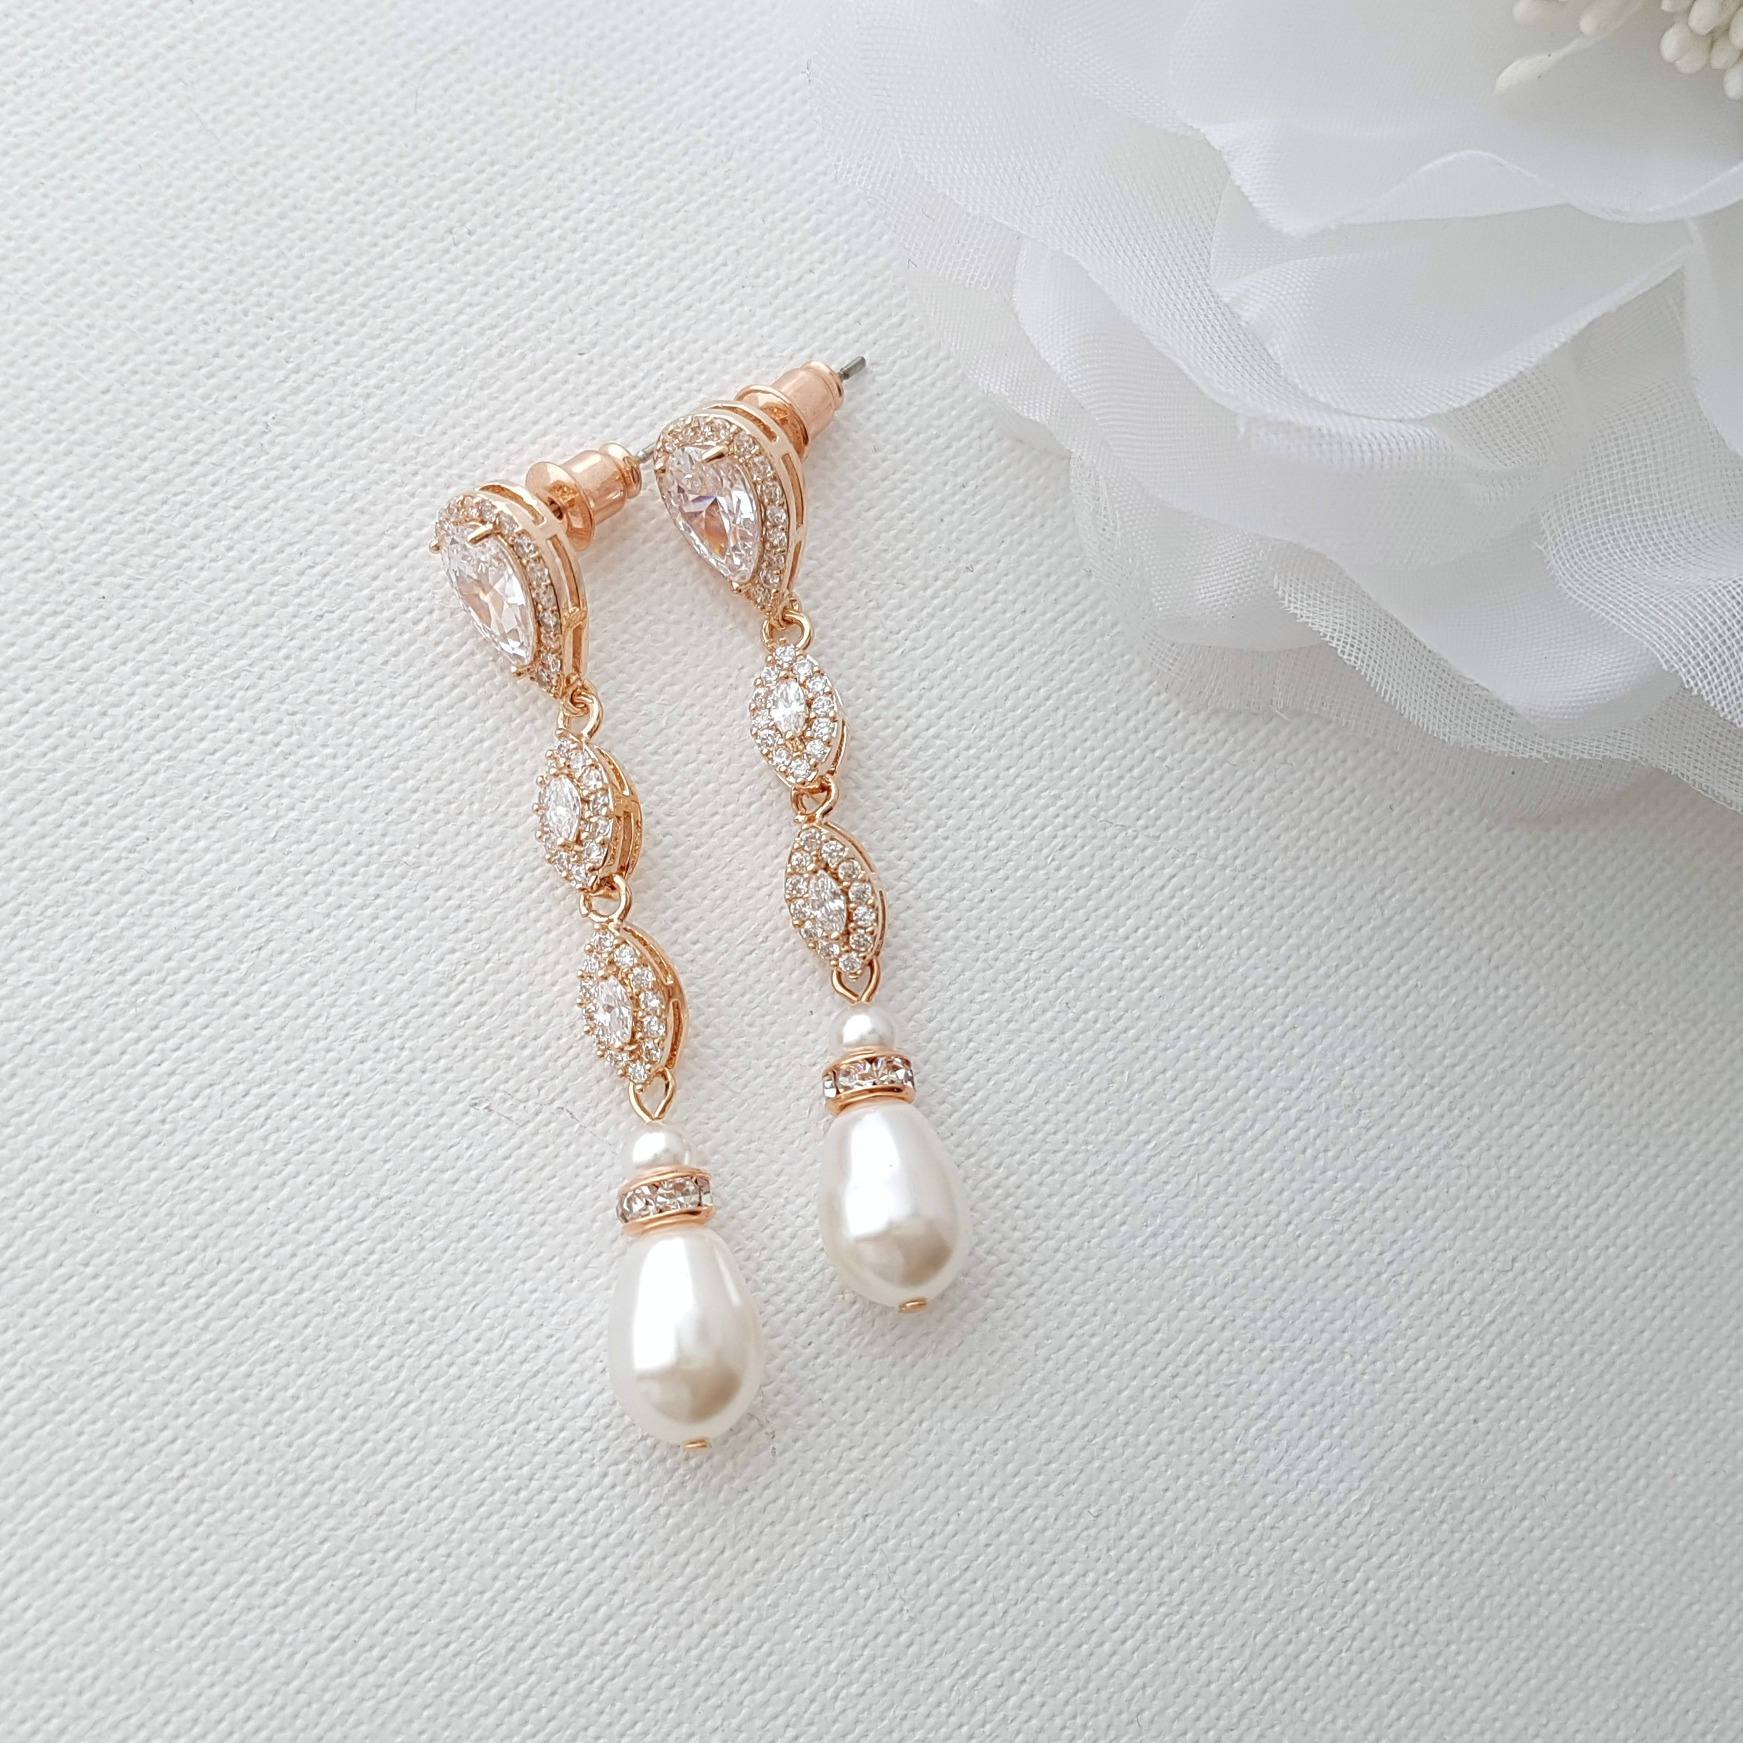 Pearl earrings in rose gold for Weddings